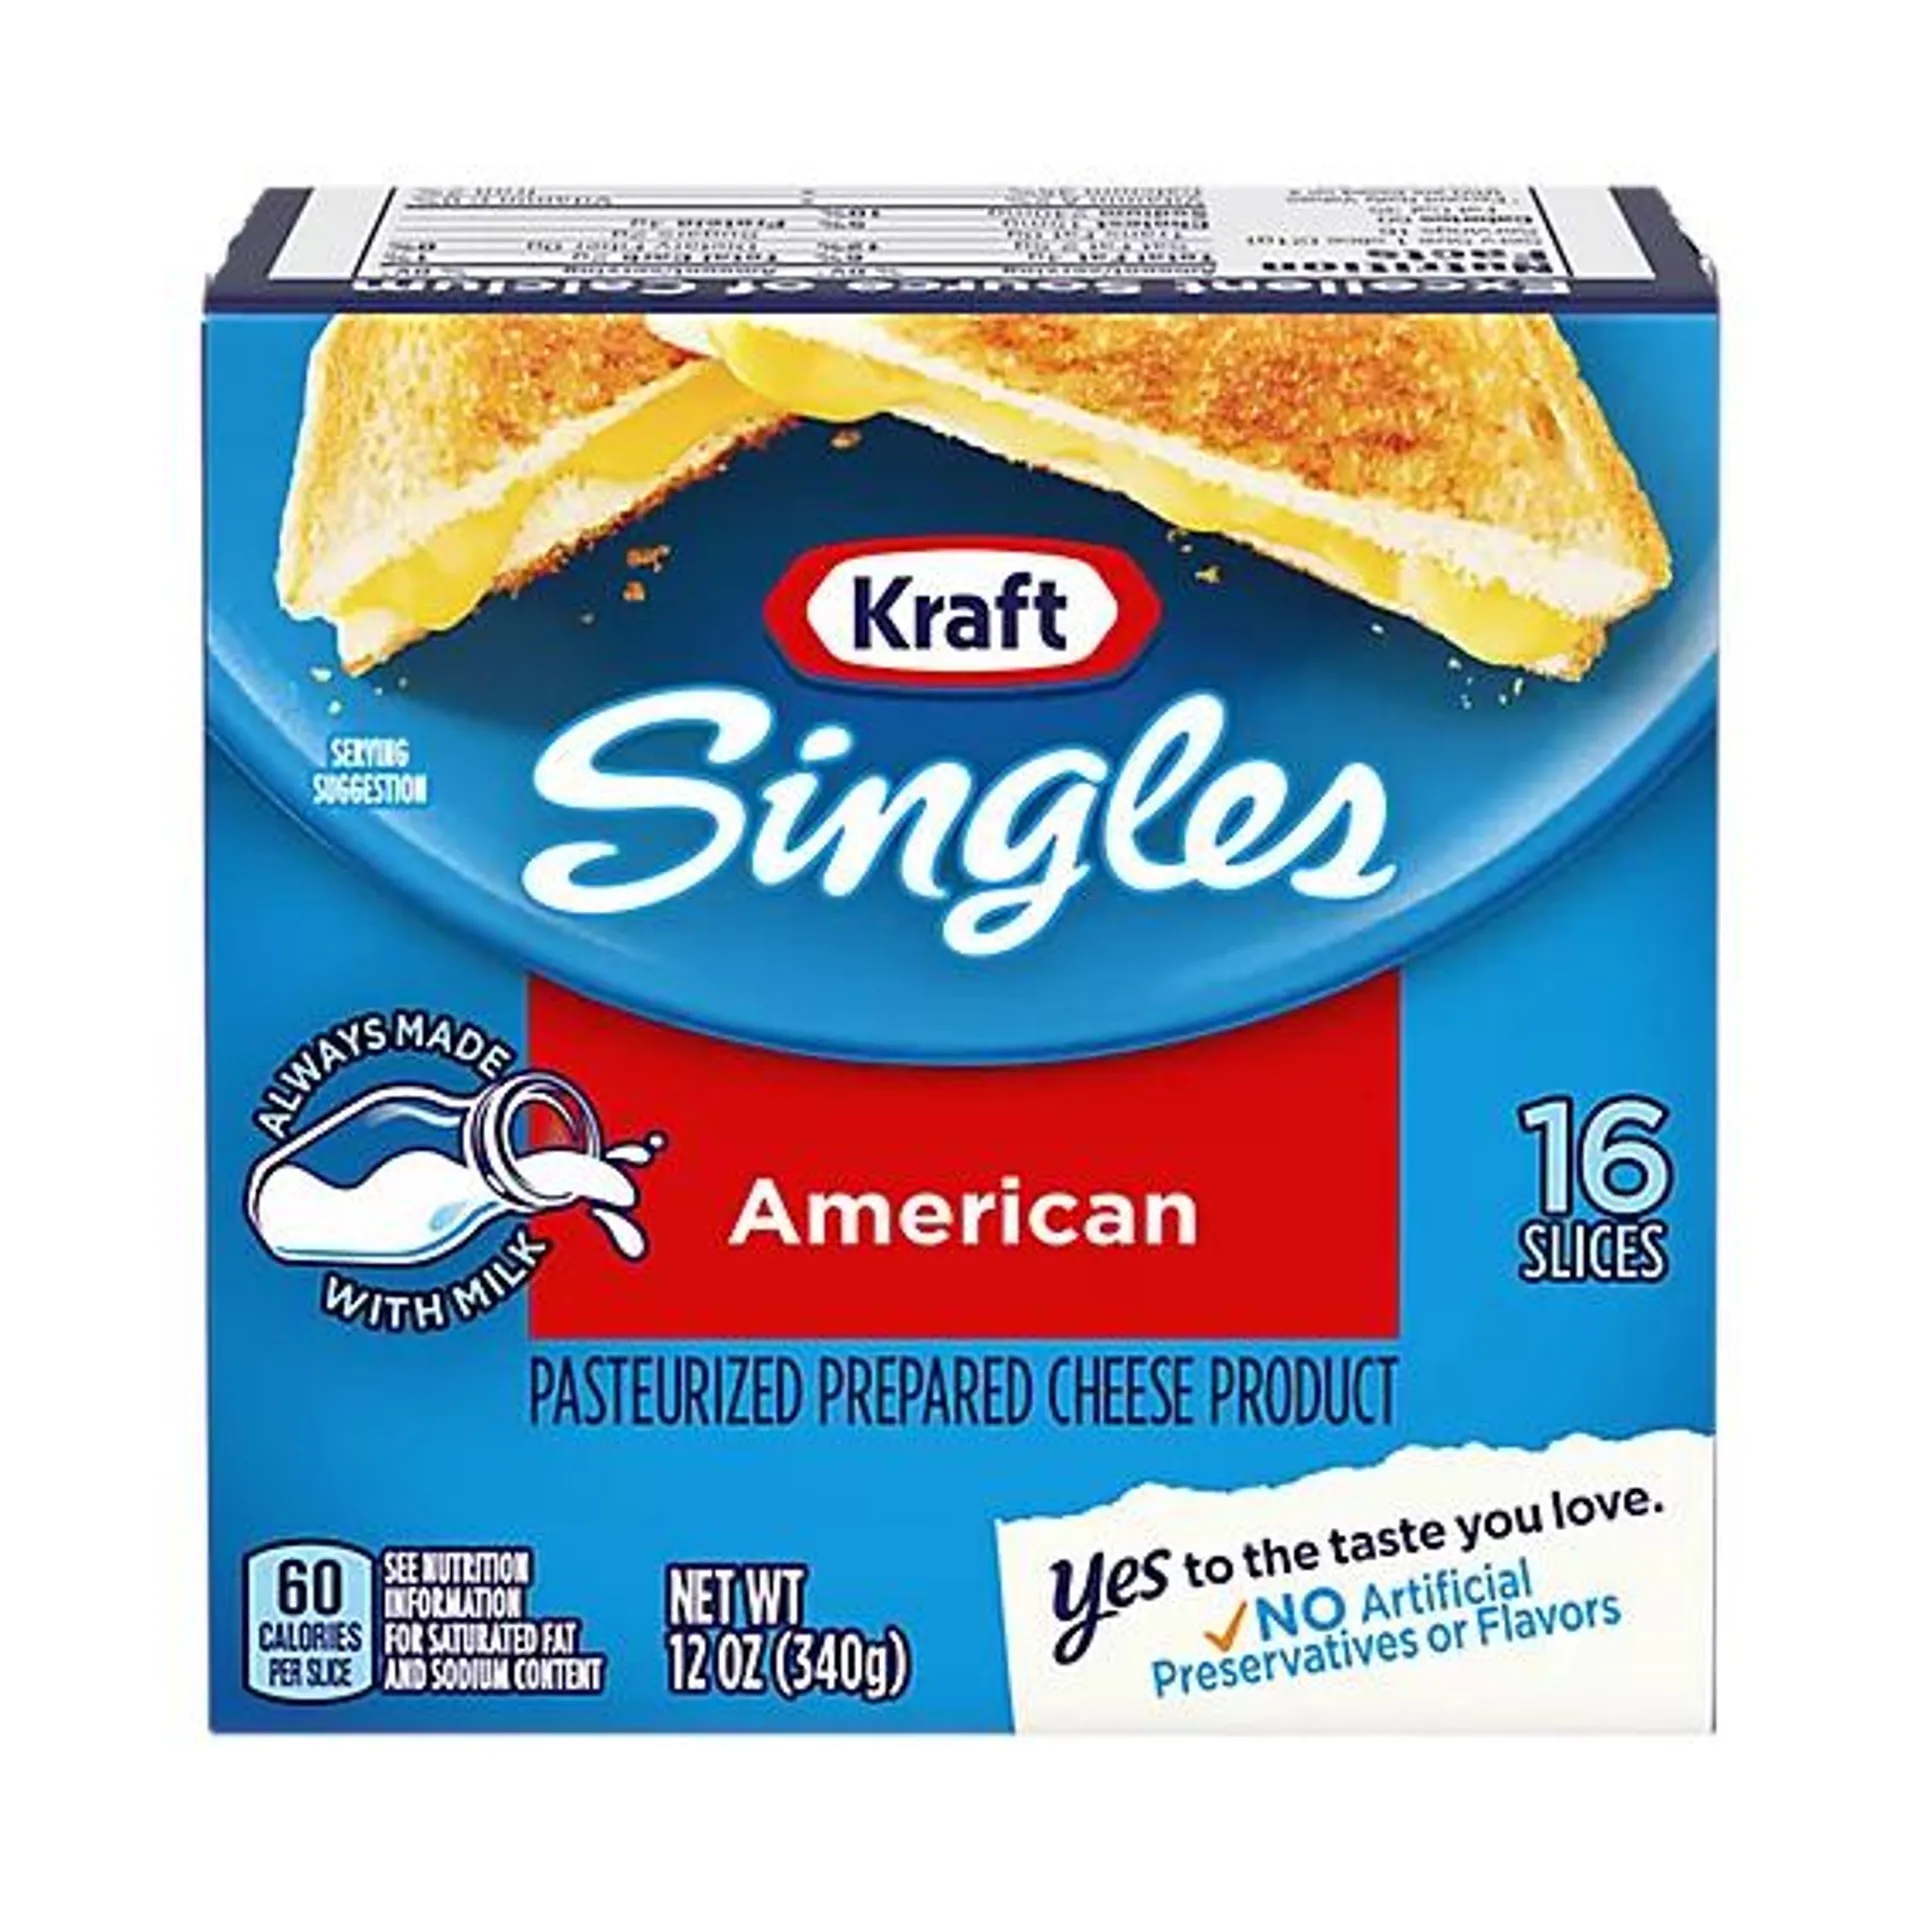 Kraft Singles American Slices Pack - 16 Count